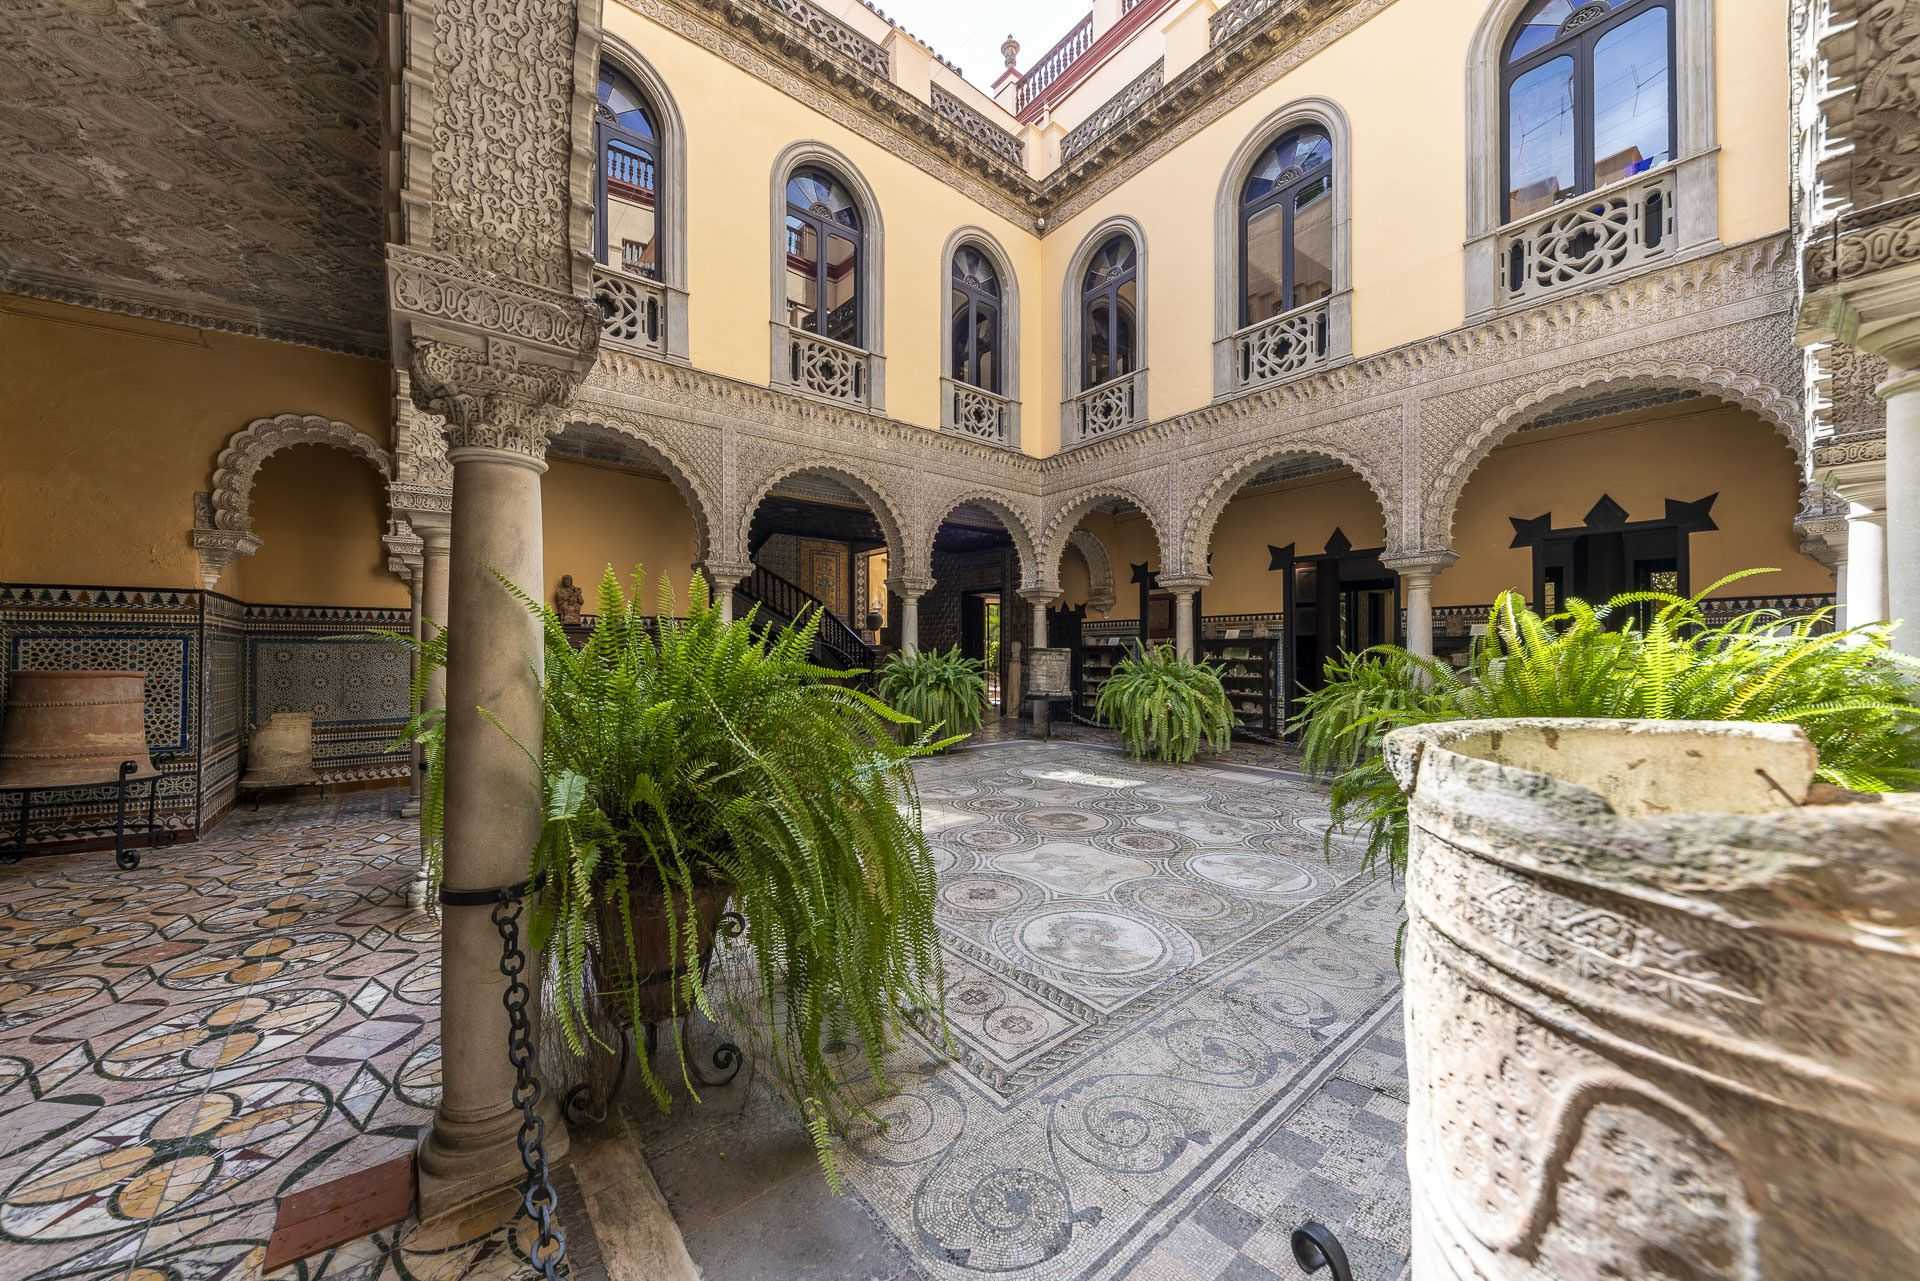 Casa Palacio Condesa de Lebrija